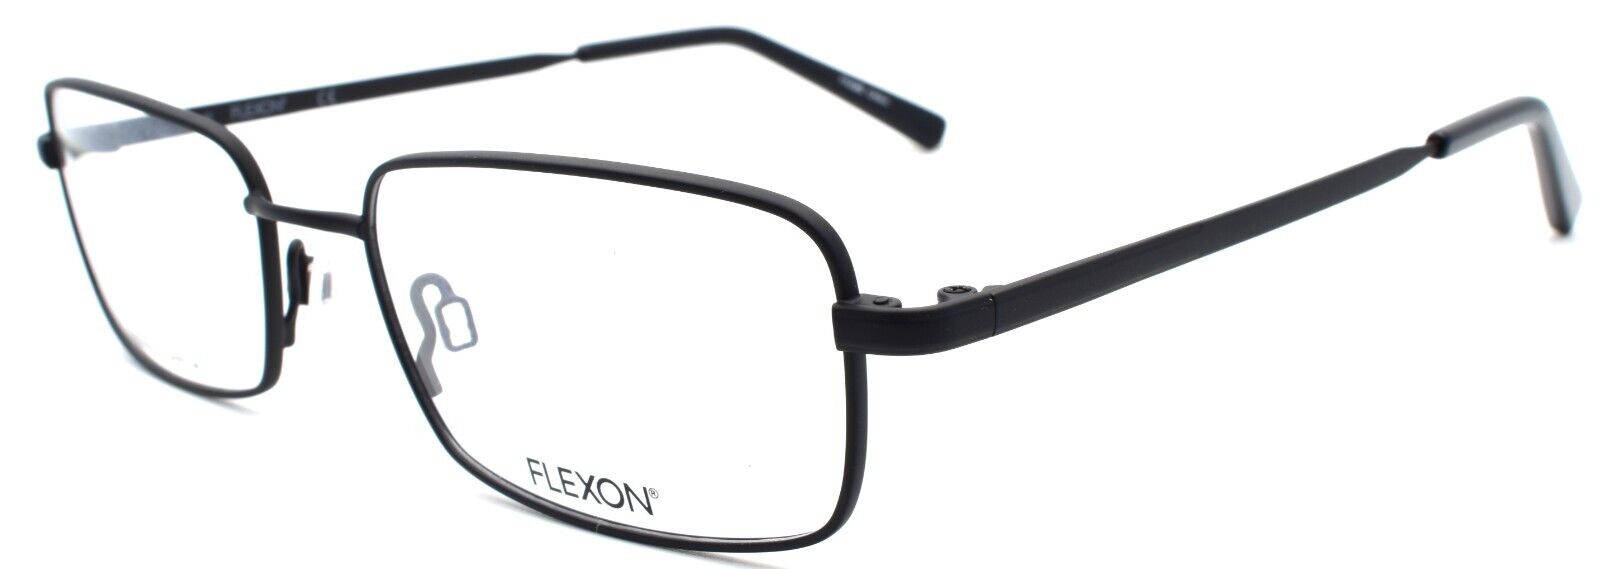 1-Flexon H6051 001 Men's Eyeglasses Frames 53-18-145 Black Flexible Titanium-886895485548-IKSpecs